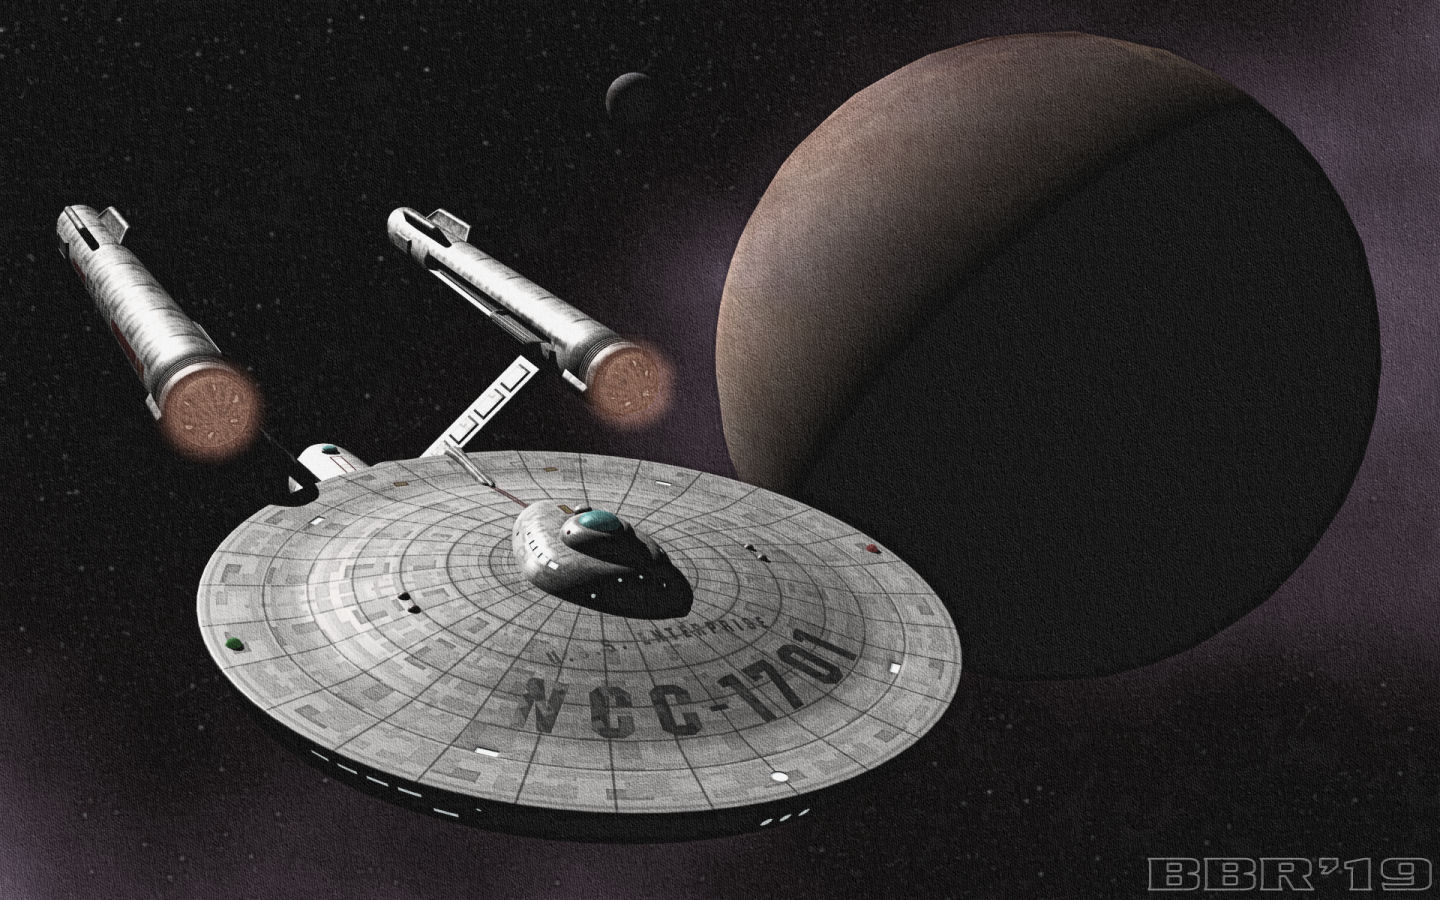 Kirk's Enterprise